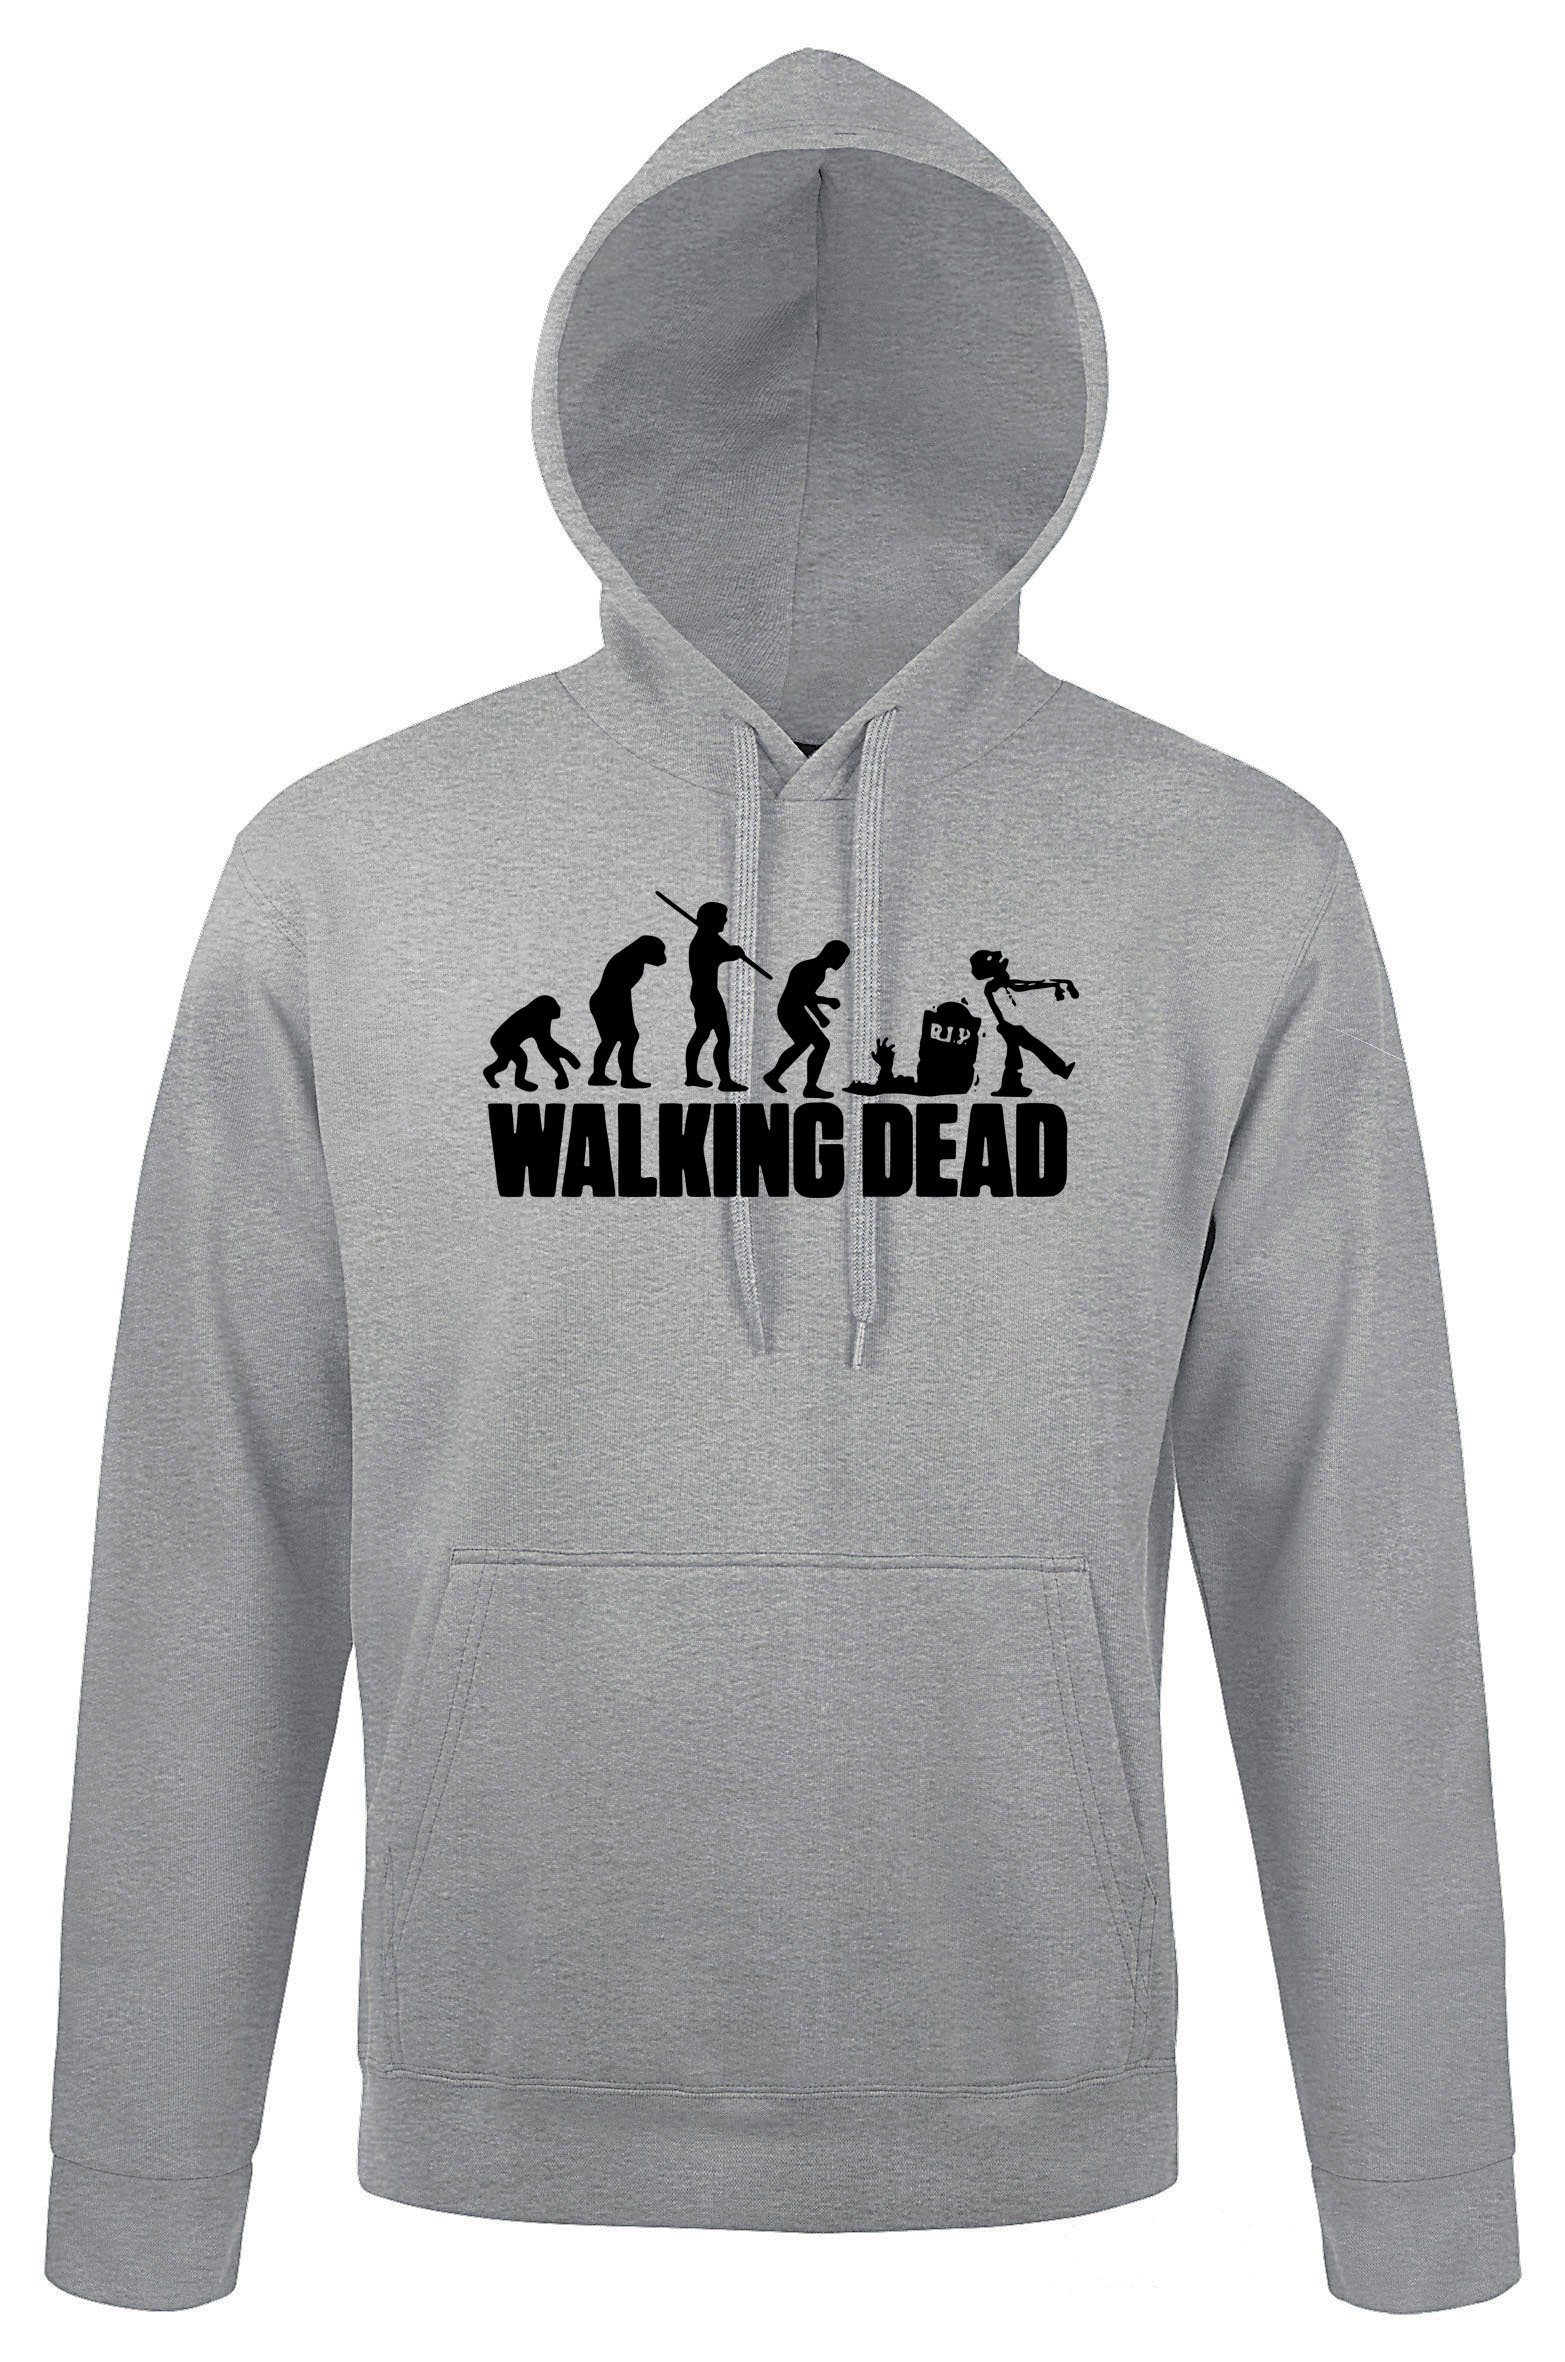 Motiv mit Zombie Dead Herren Kapuzenpullover Pullover Grau Serien Designz trendigem Youth Hoodie Walking